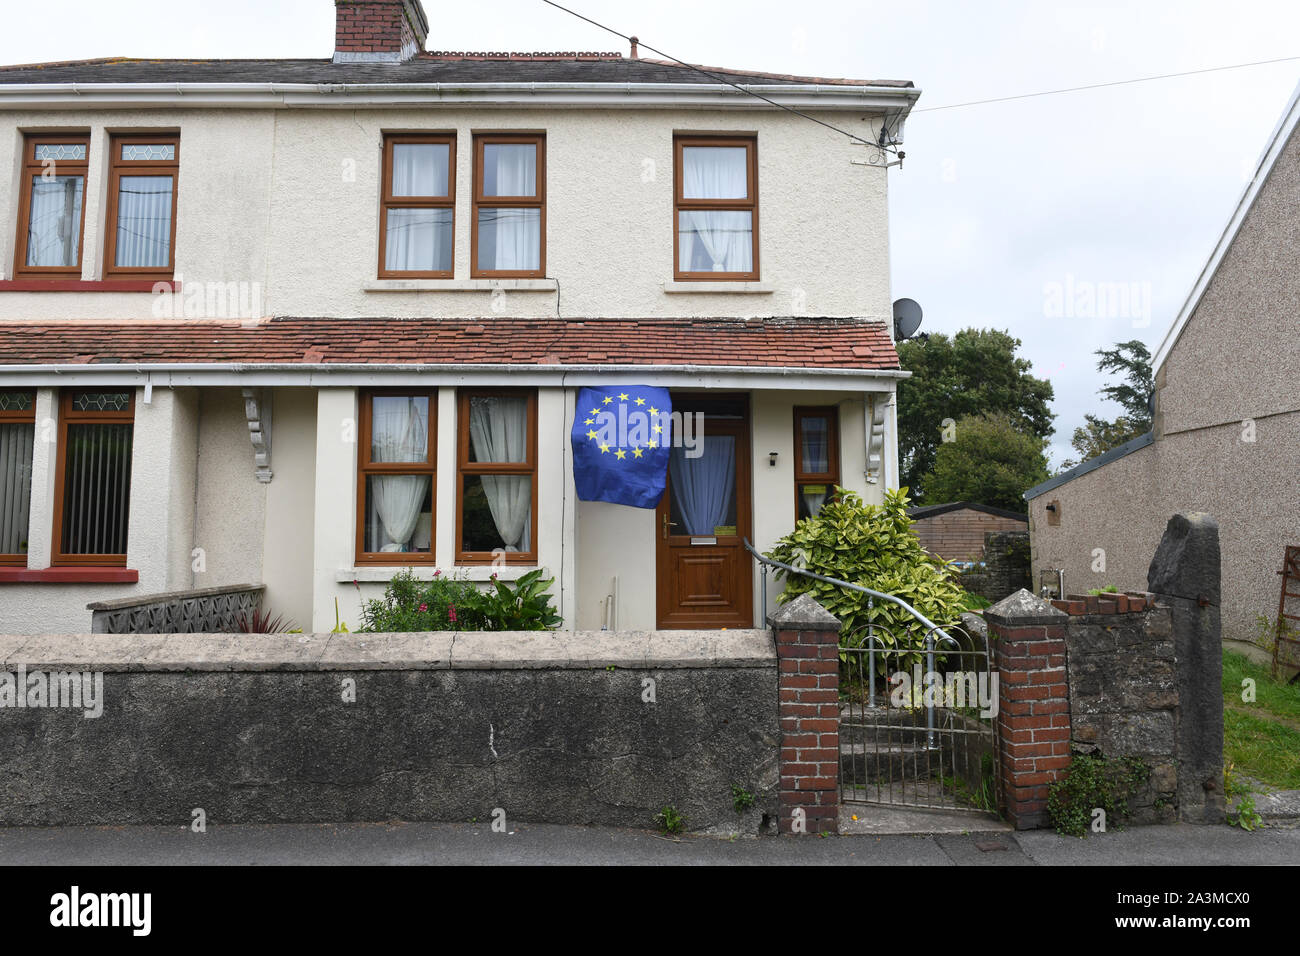 Une Union européenne drapeau flotte à l'extérieur d'une habitation jumelée maison à Kidwell, Pays de Galles, Royaume-Uni, pendant la crise Brexit. Banque D'Images